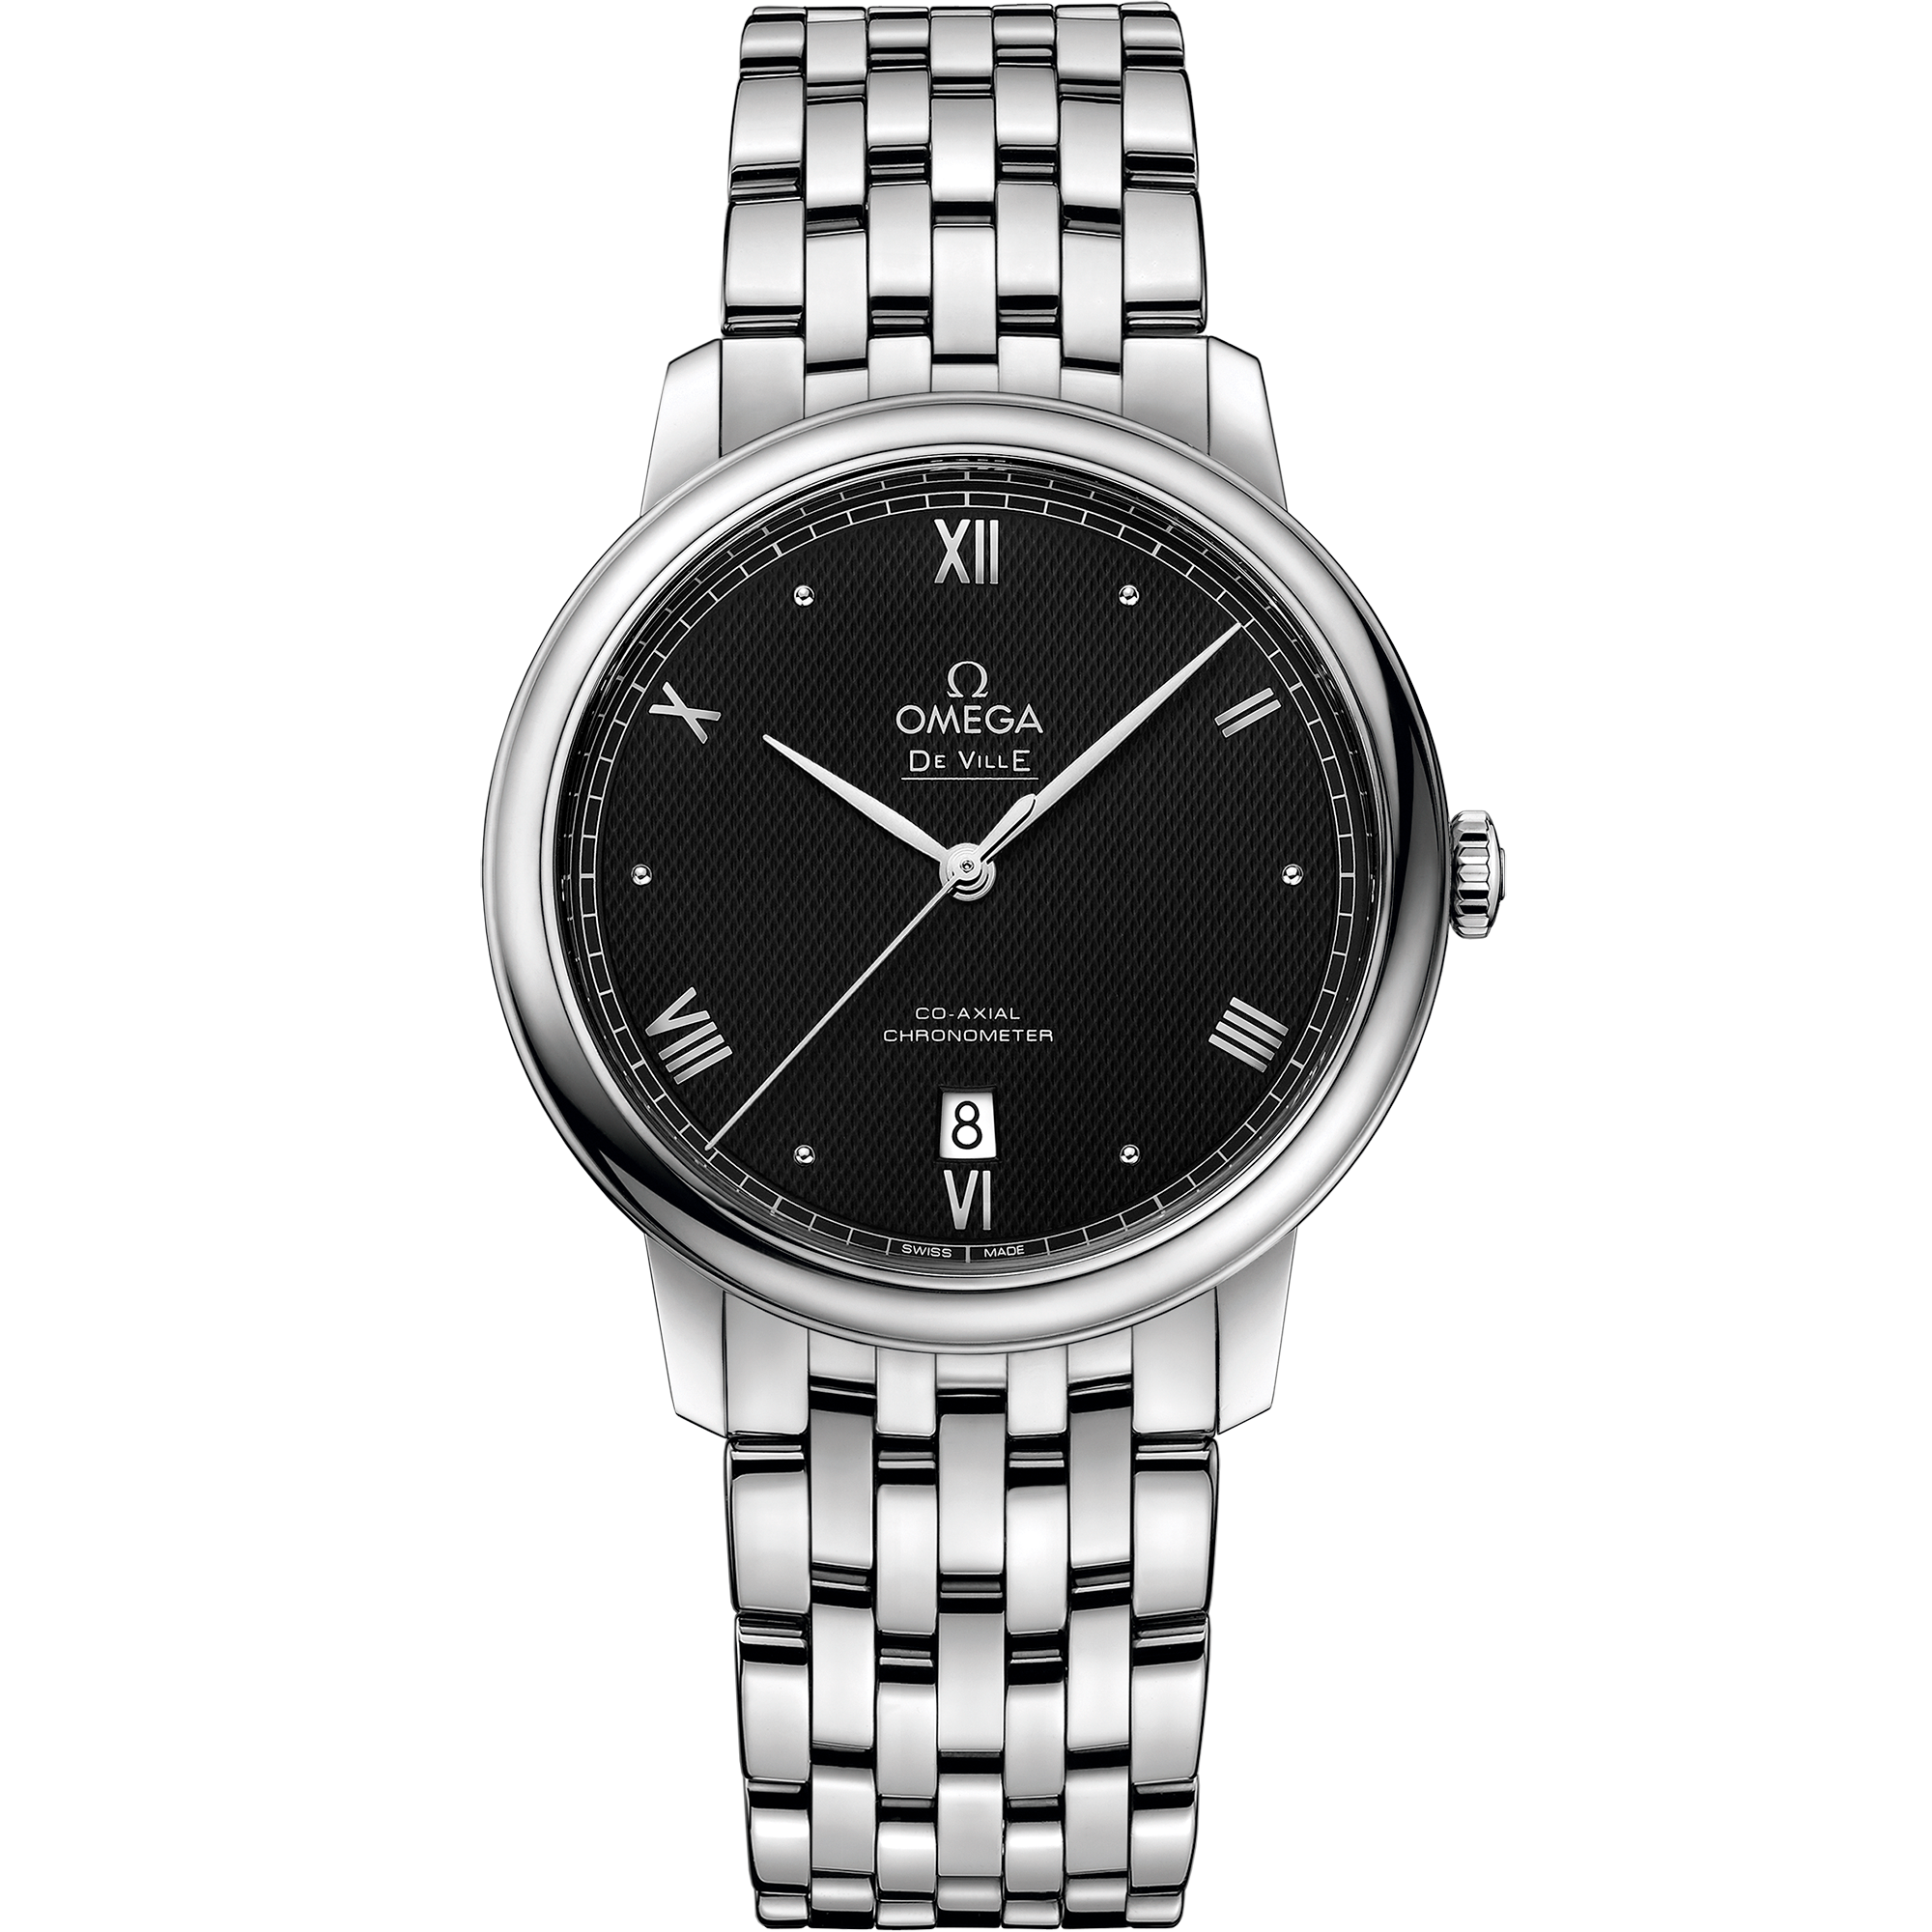  dial watch on Steel case with Steel bracelet - De Ville 39.5 mm, steel on steel - 424.10.40.20.01.002